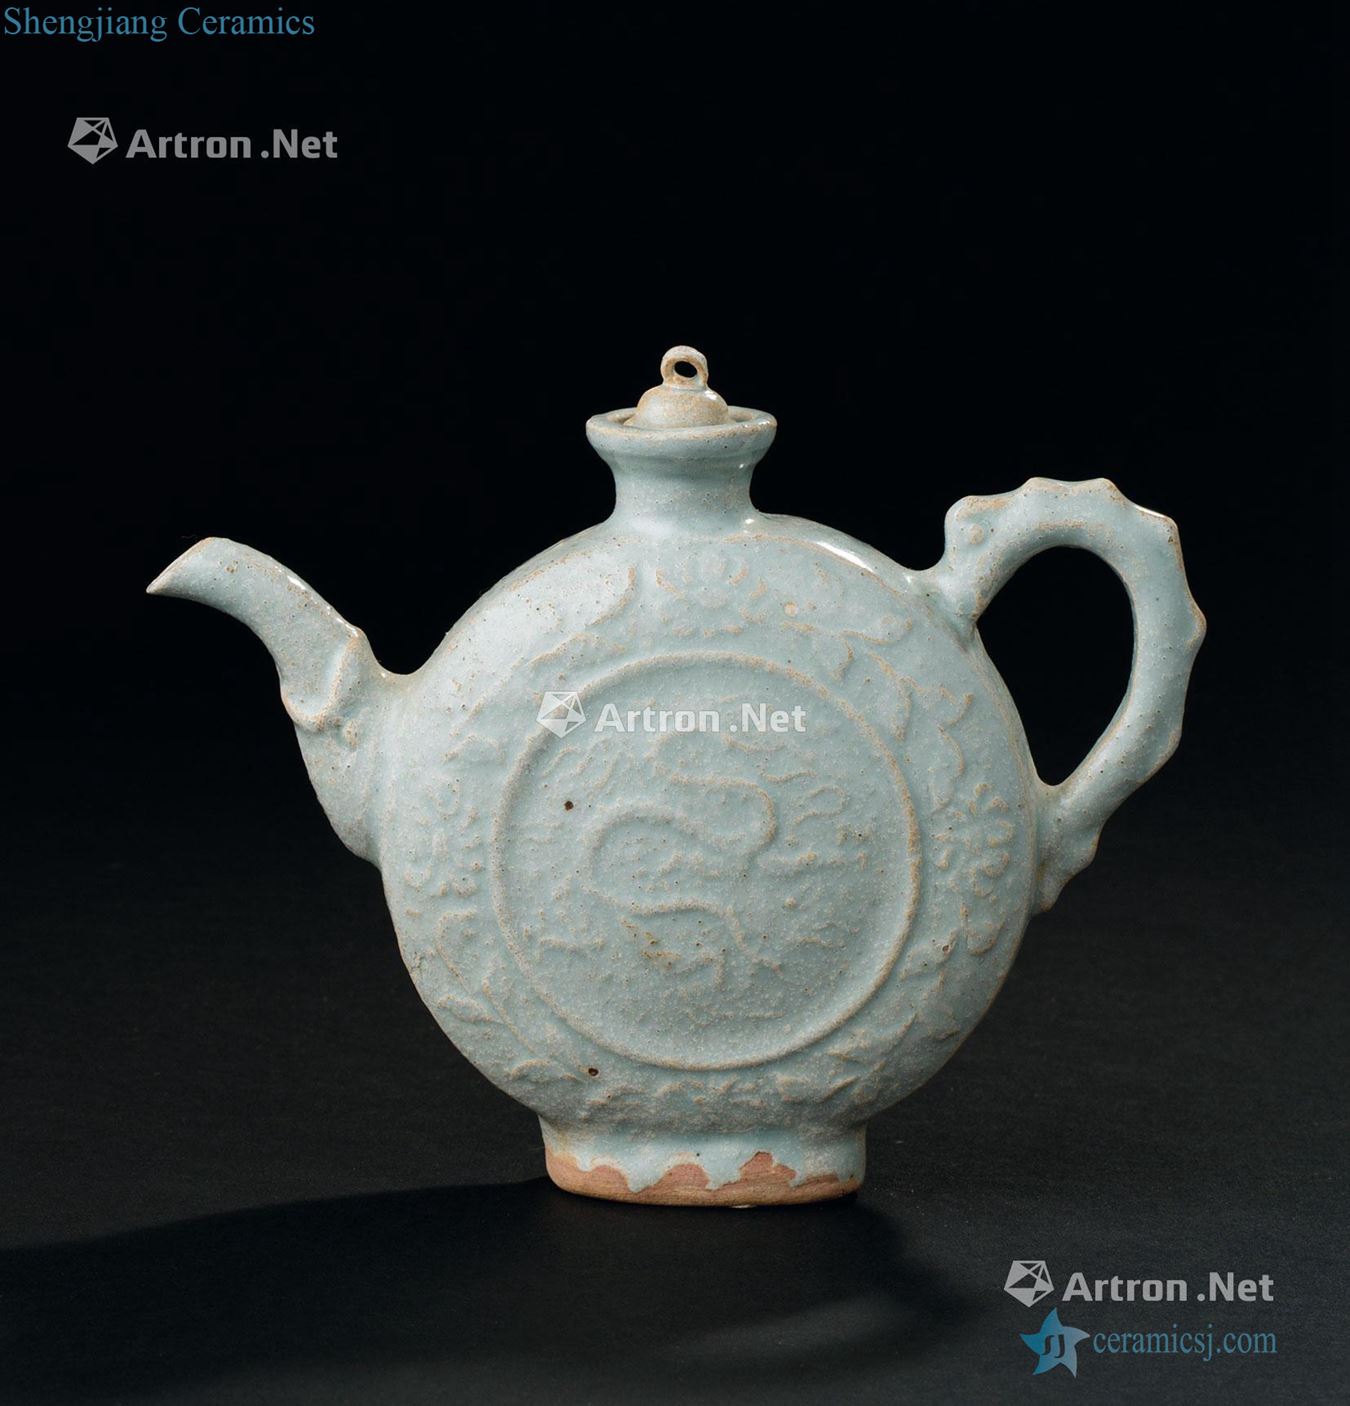 Song dynasty - the yuan dynasty (960-1368), a shadow dragon grain flat pot ewer